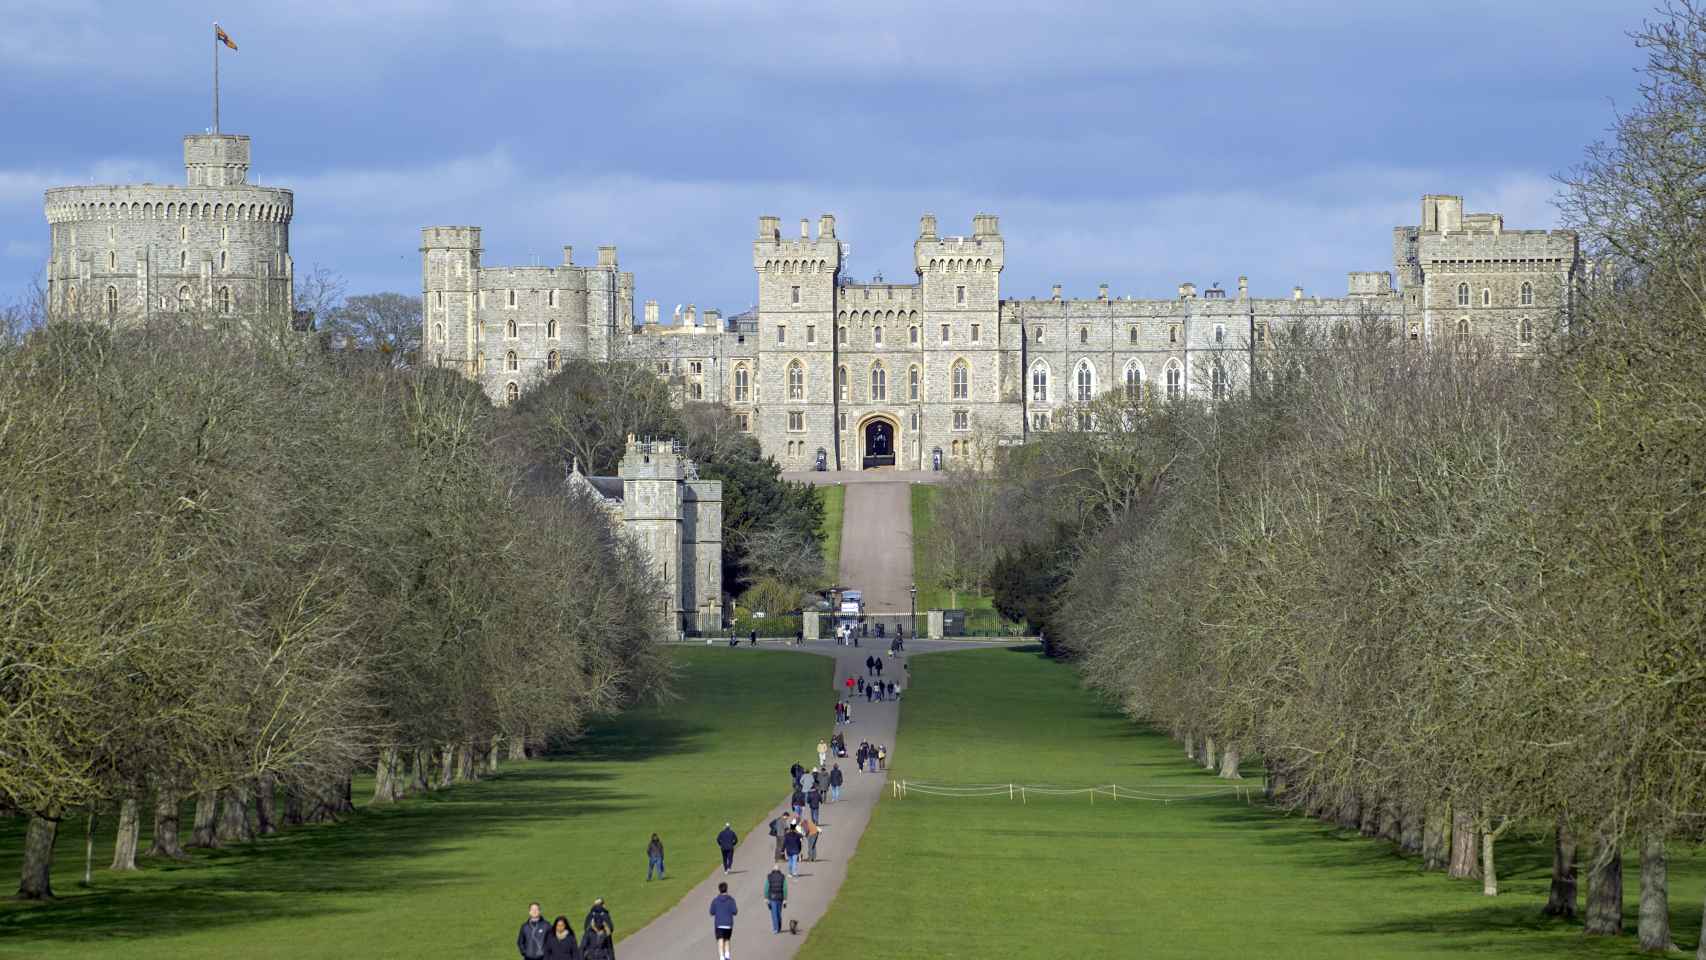 La intención de los duques de Cambridge es acercarse al Castillo de Windsor, donde la reina Isabel reside actualmente.